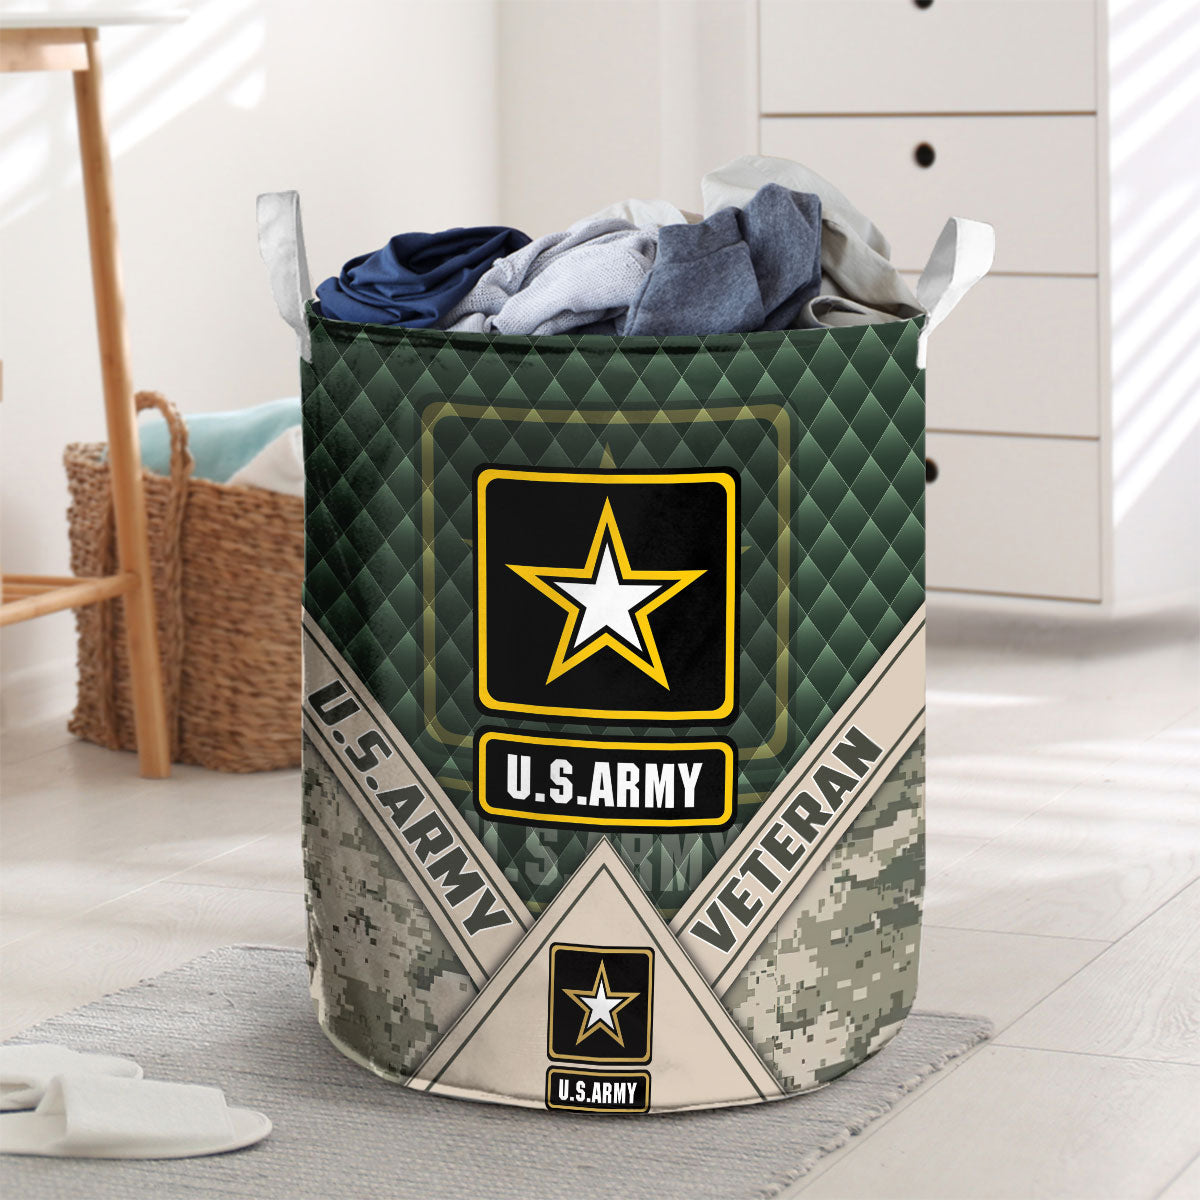 U.S. Army Camo Laundry Basket